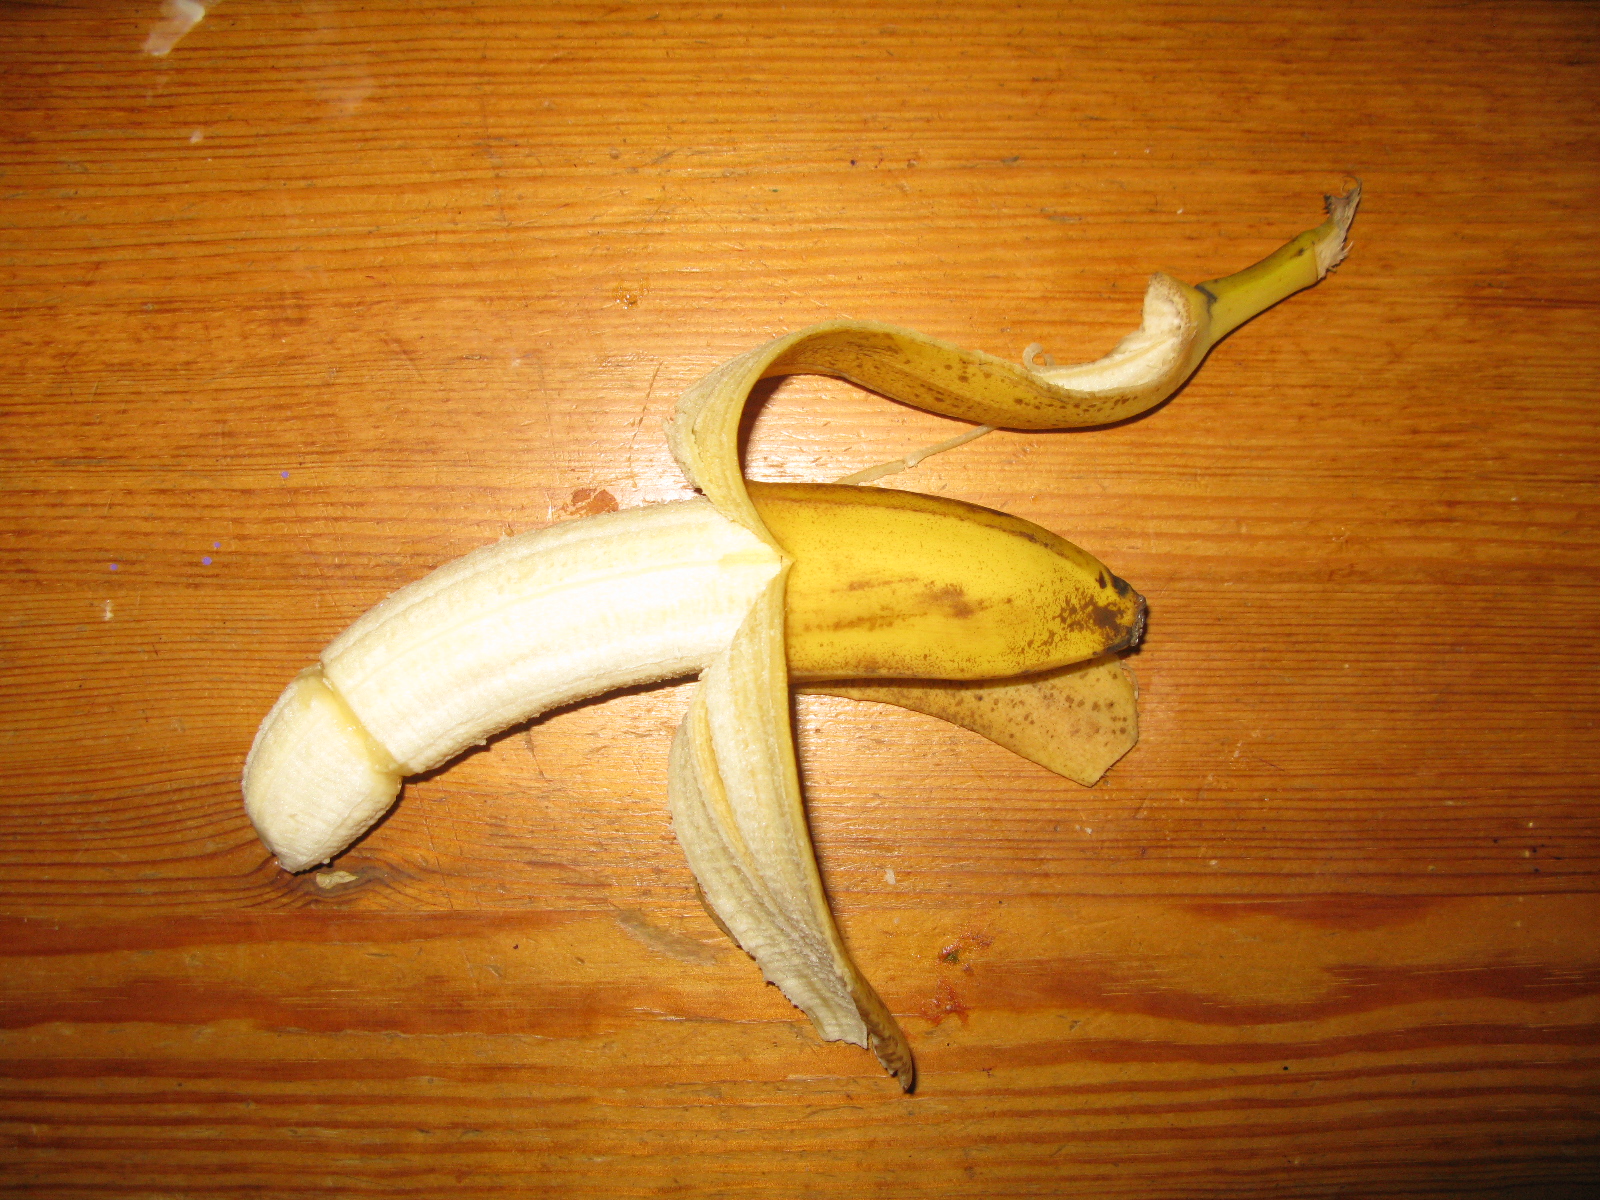 Anal banana